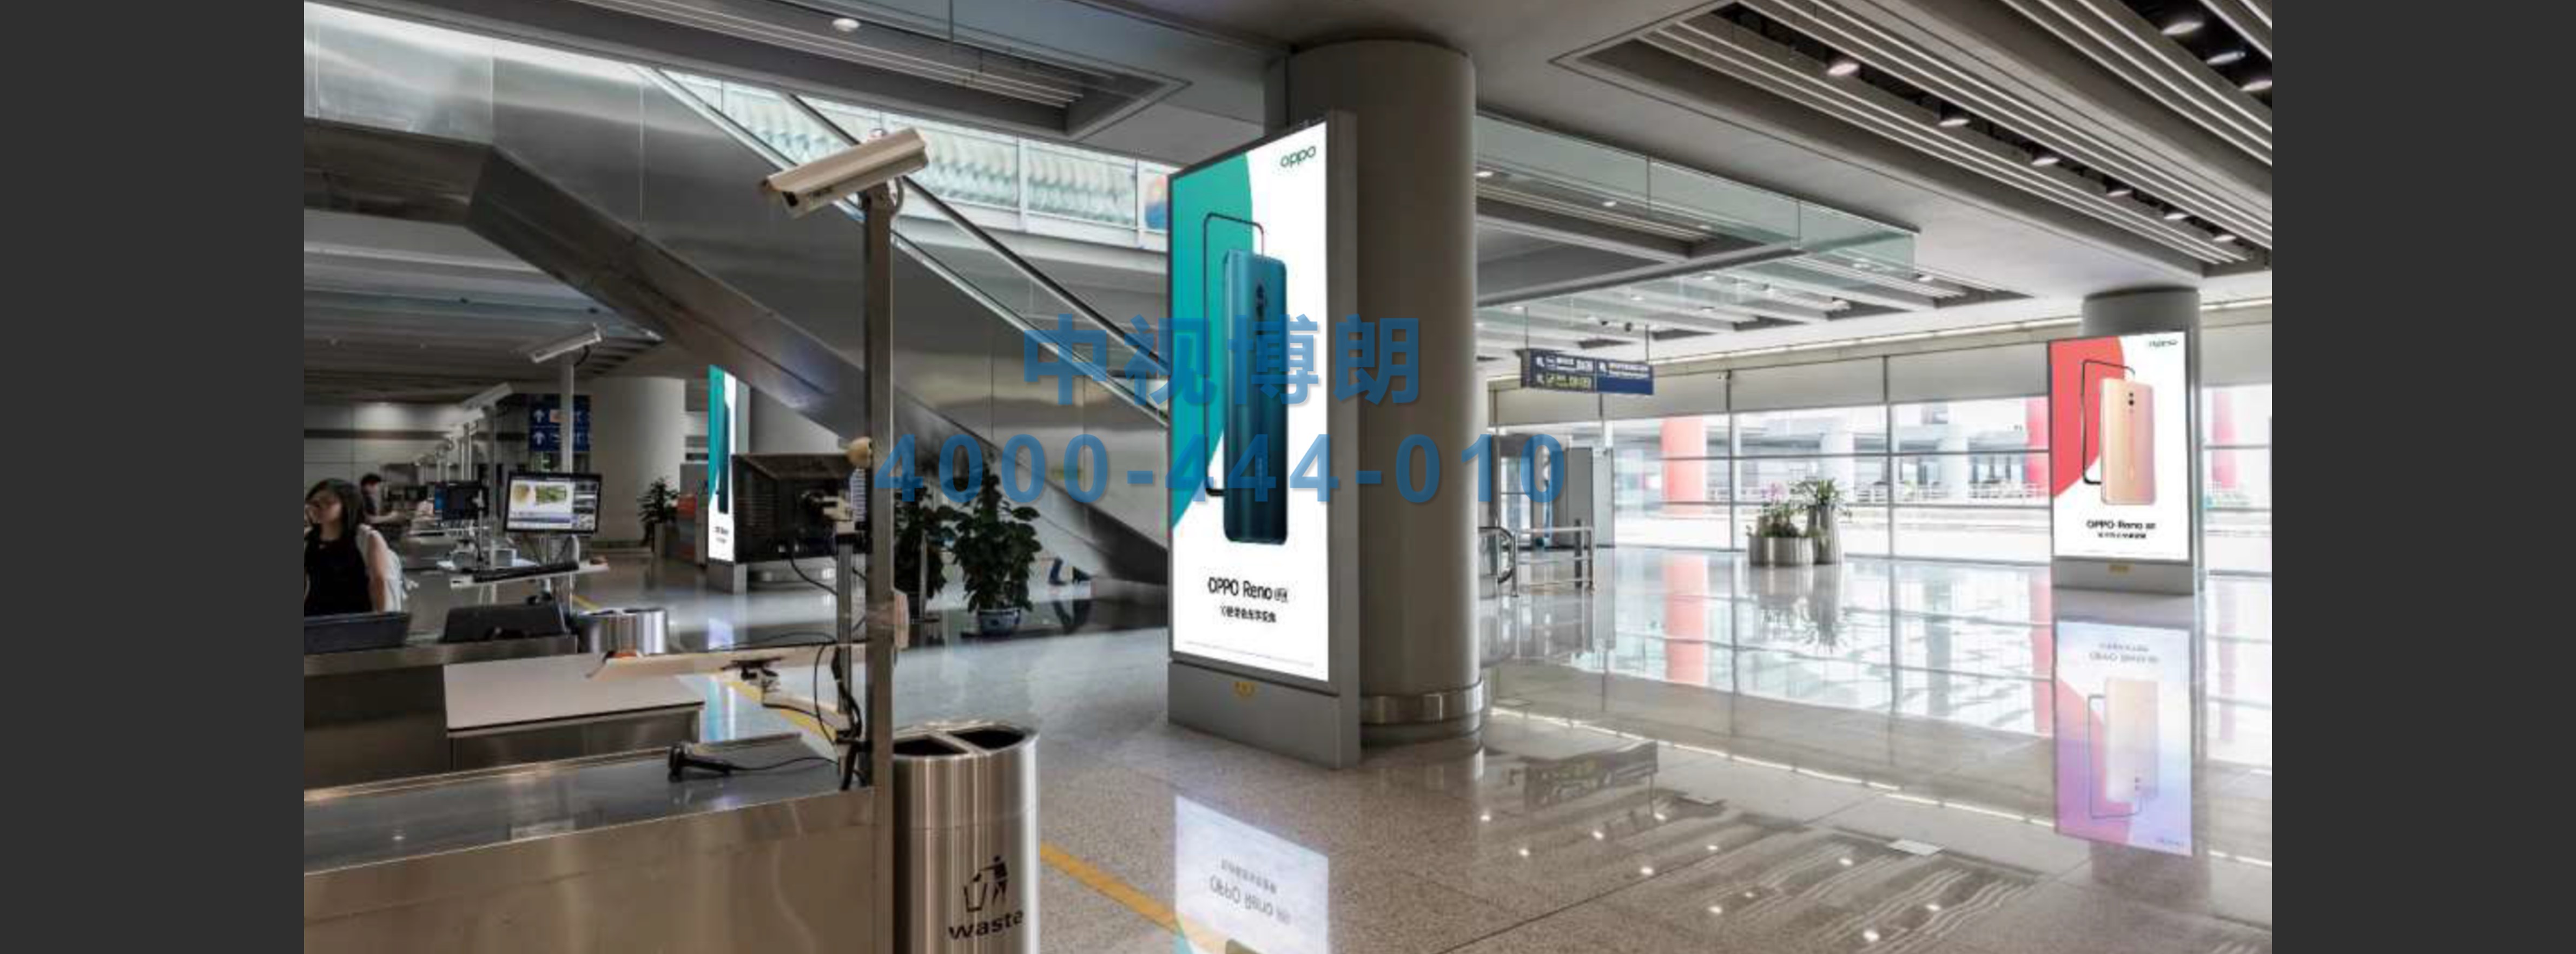 北京首都机场广告-Paired Totem Pole Lightboxes After T3 Security Check 03-04